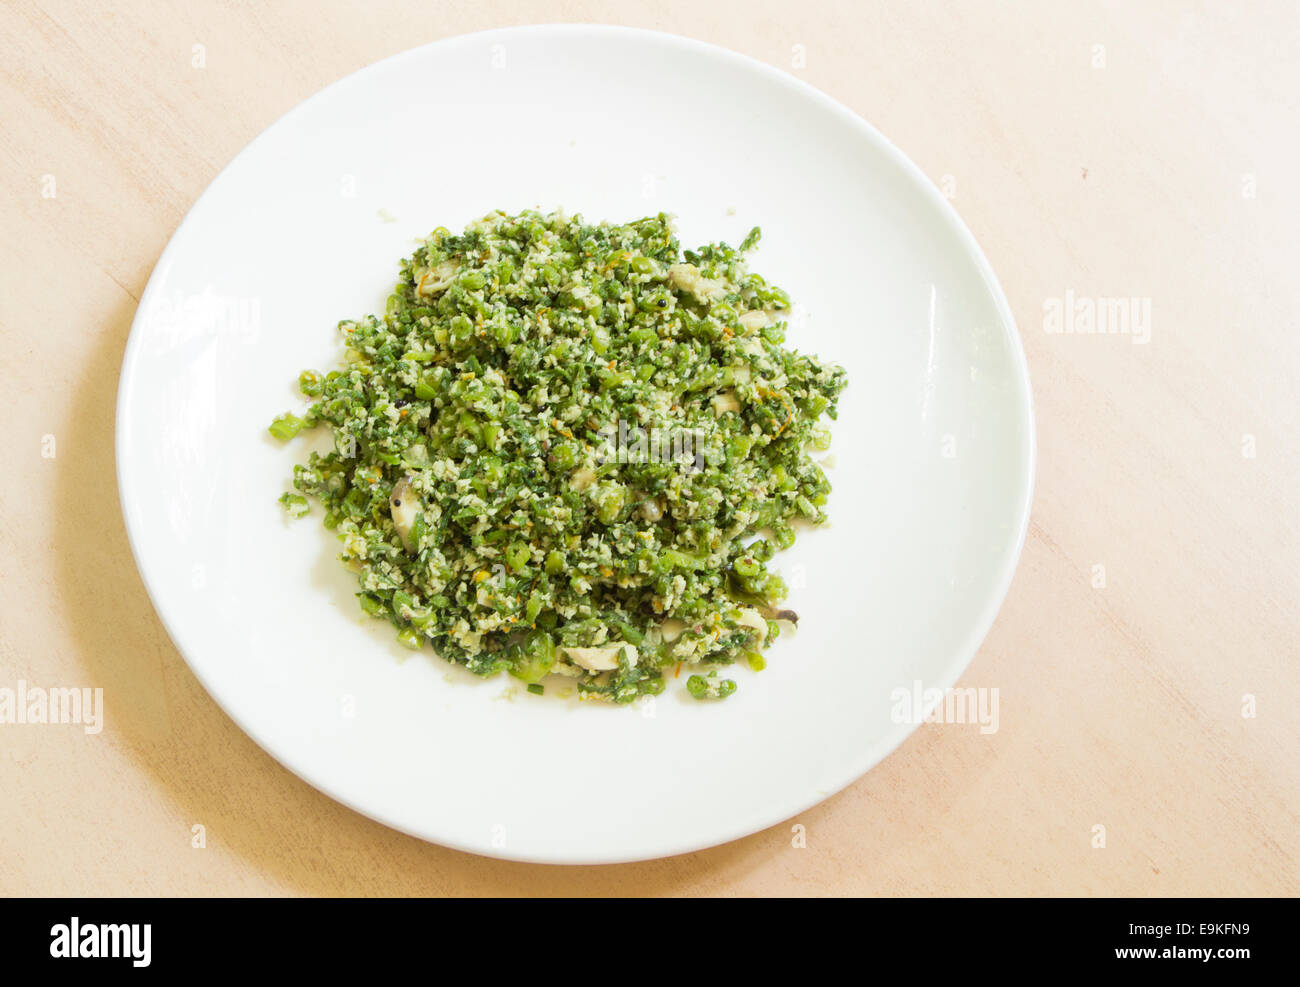 Curry preparati da foglie verde ricco di antiossidanti e flavonoidi anticancro ricchi di fibre Foto Stock